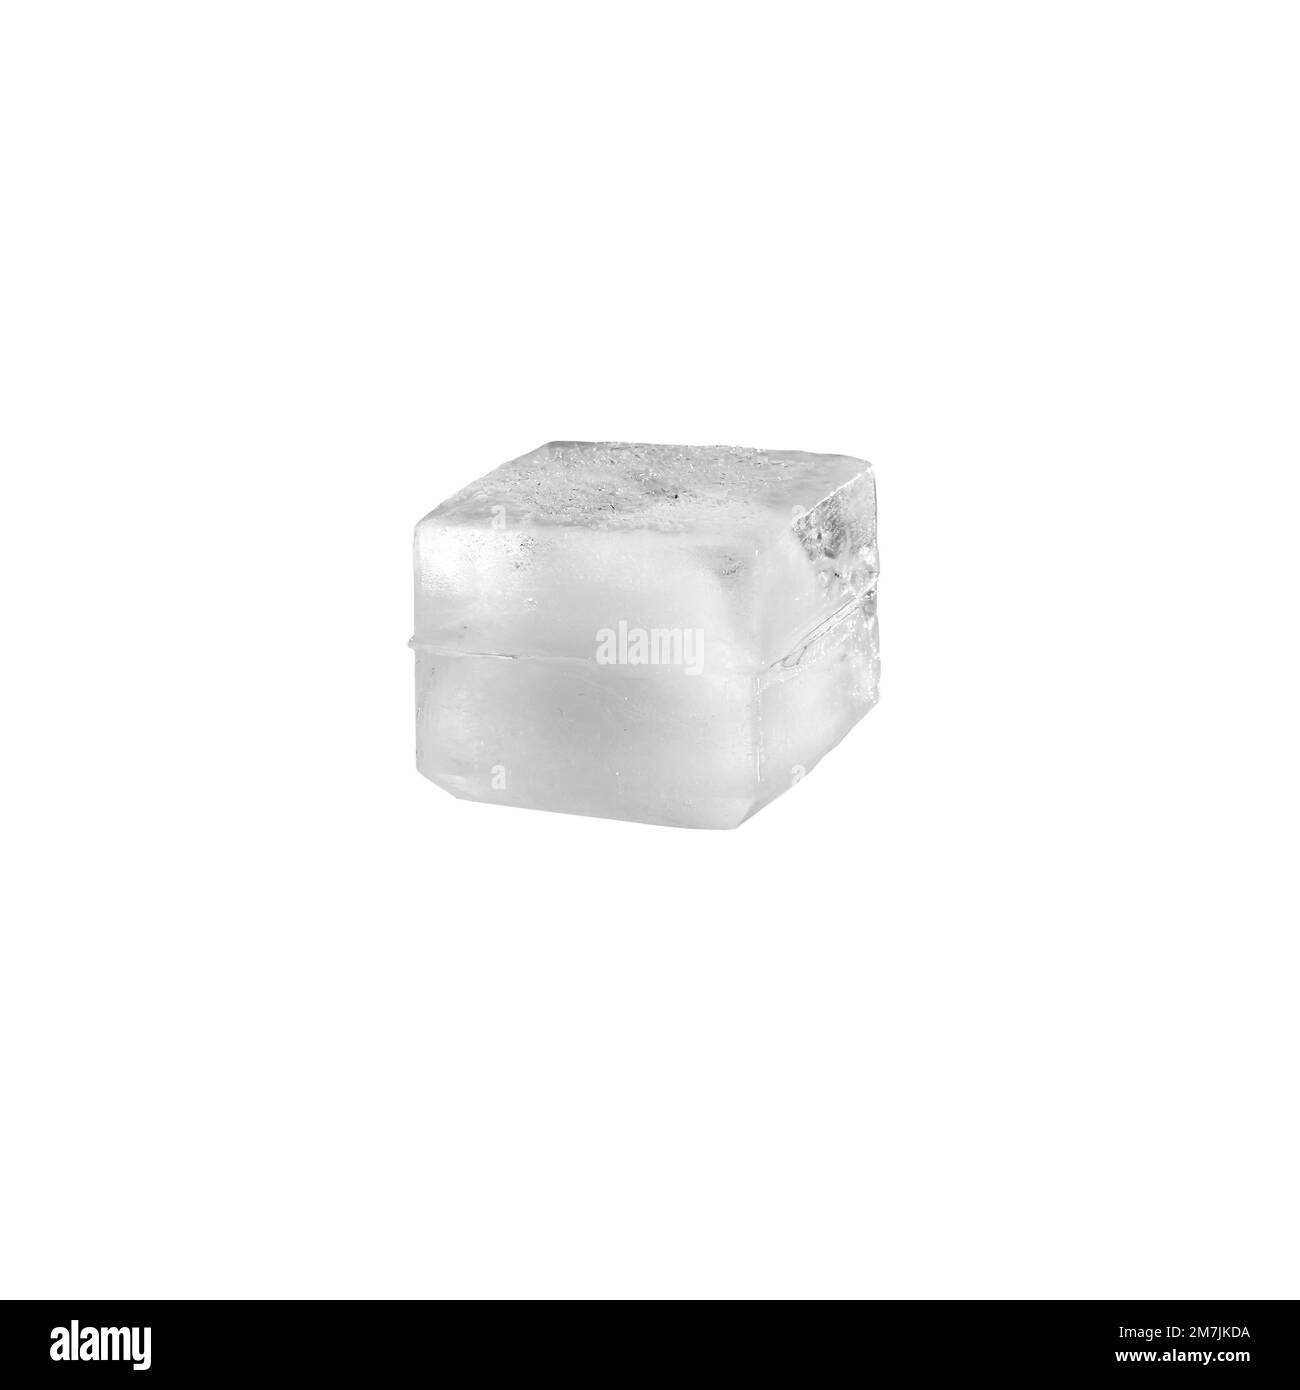 Estudio de un cubo de hielo real sobre fondo blanco Foto de stock